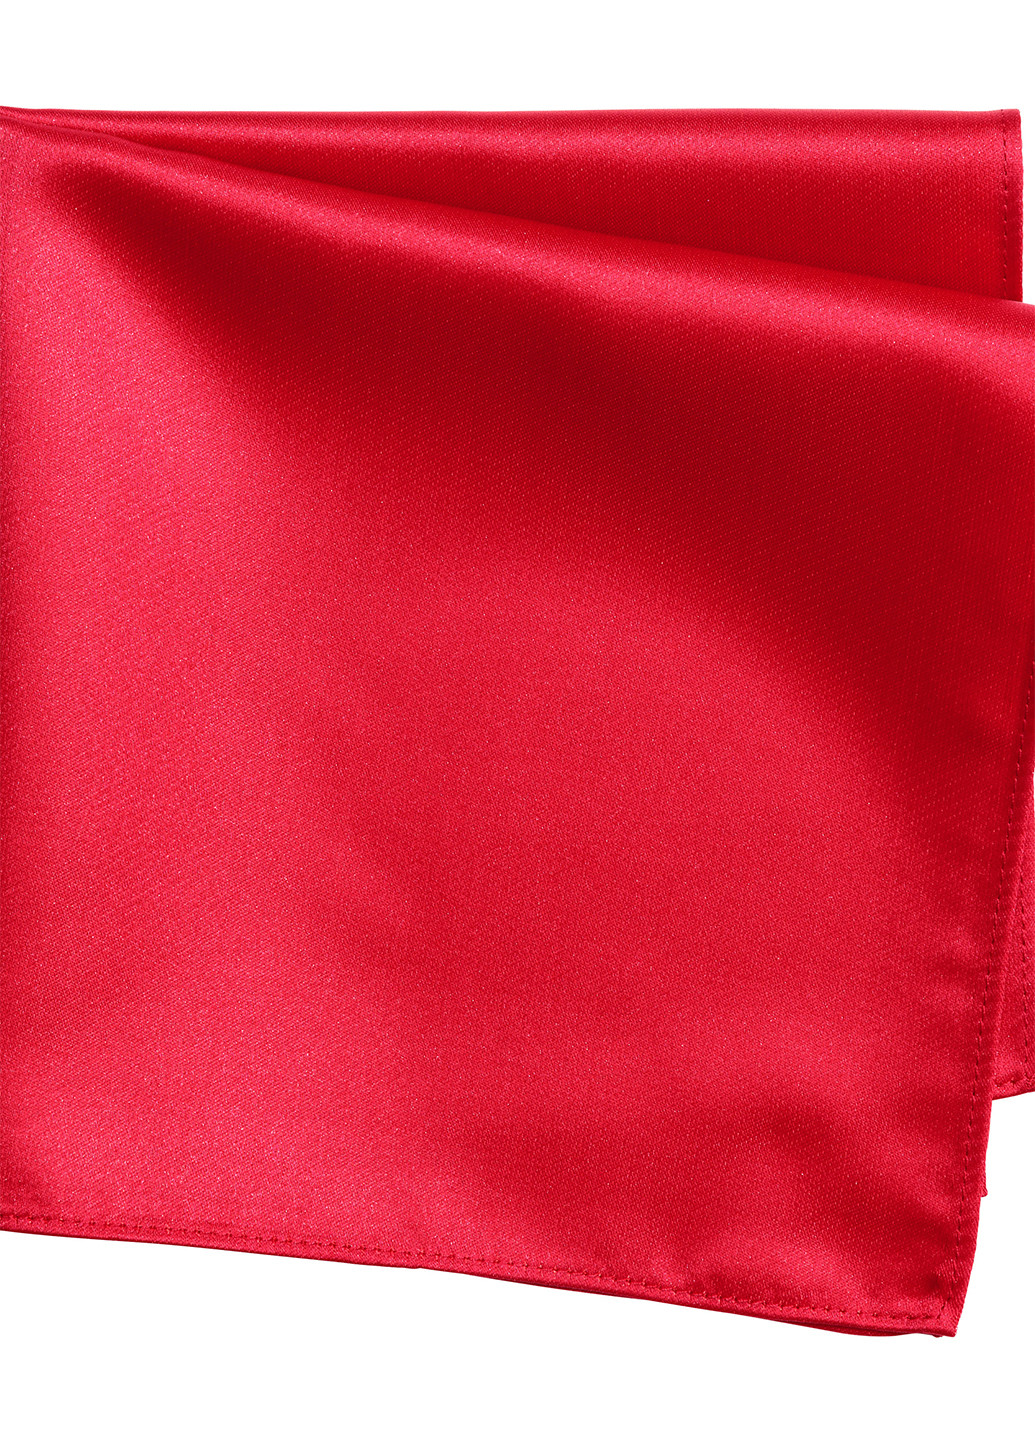 Платок H&M однотонный красный кэжуал полиэстер